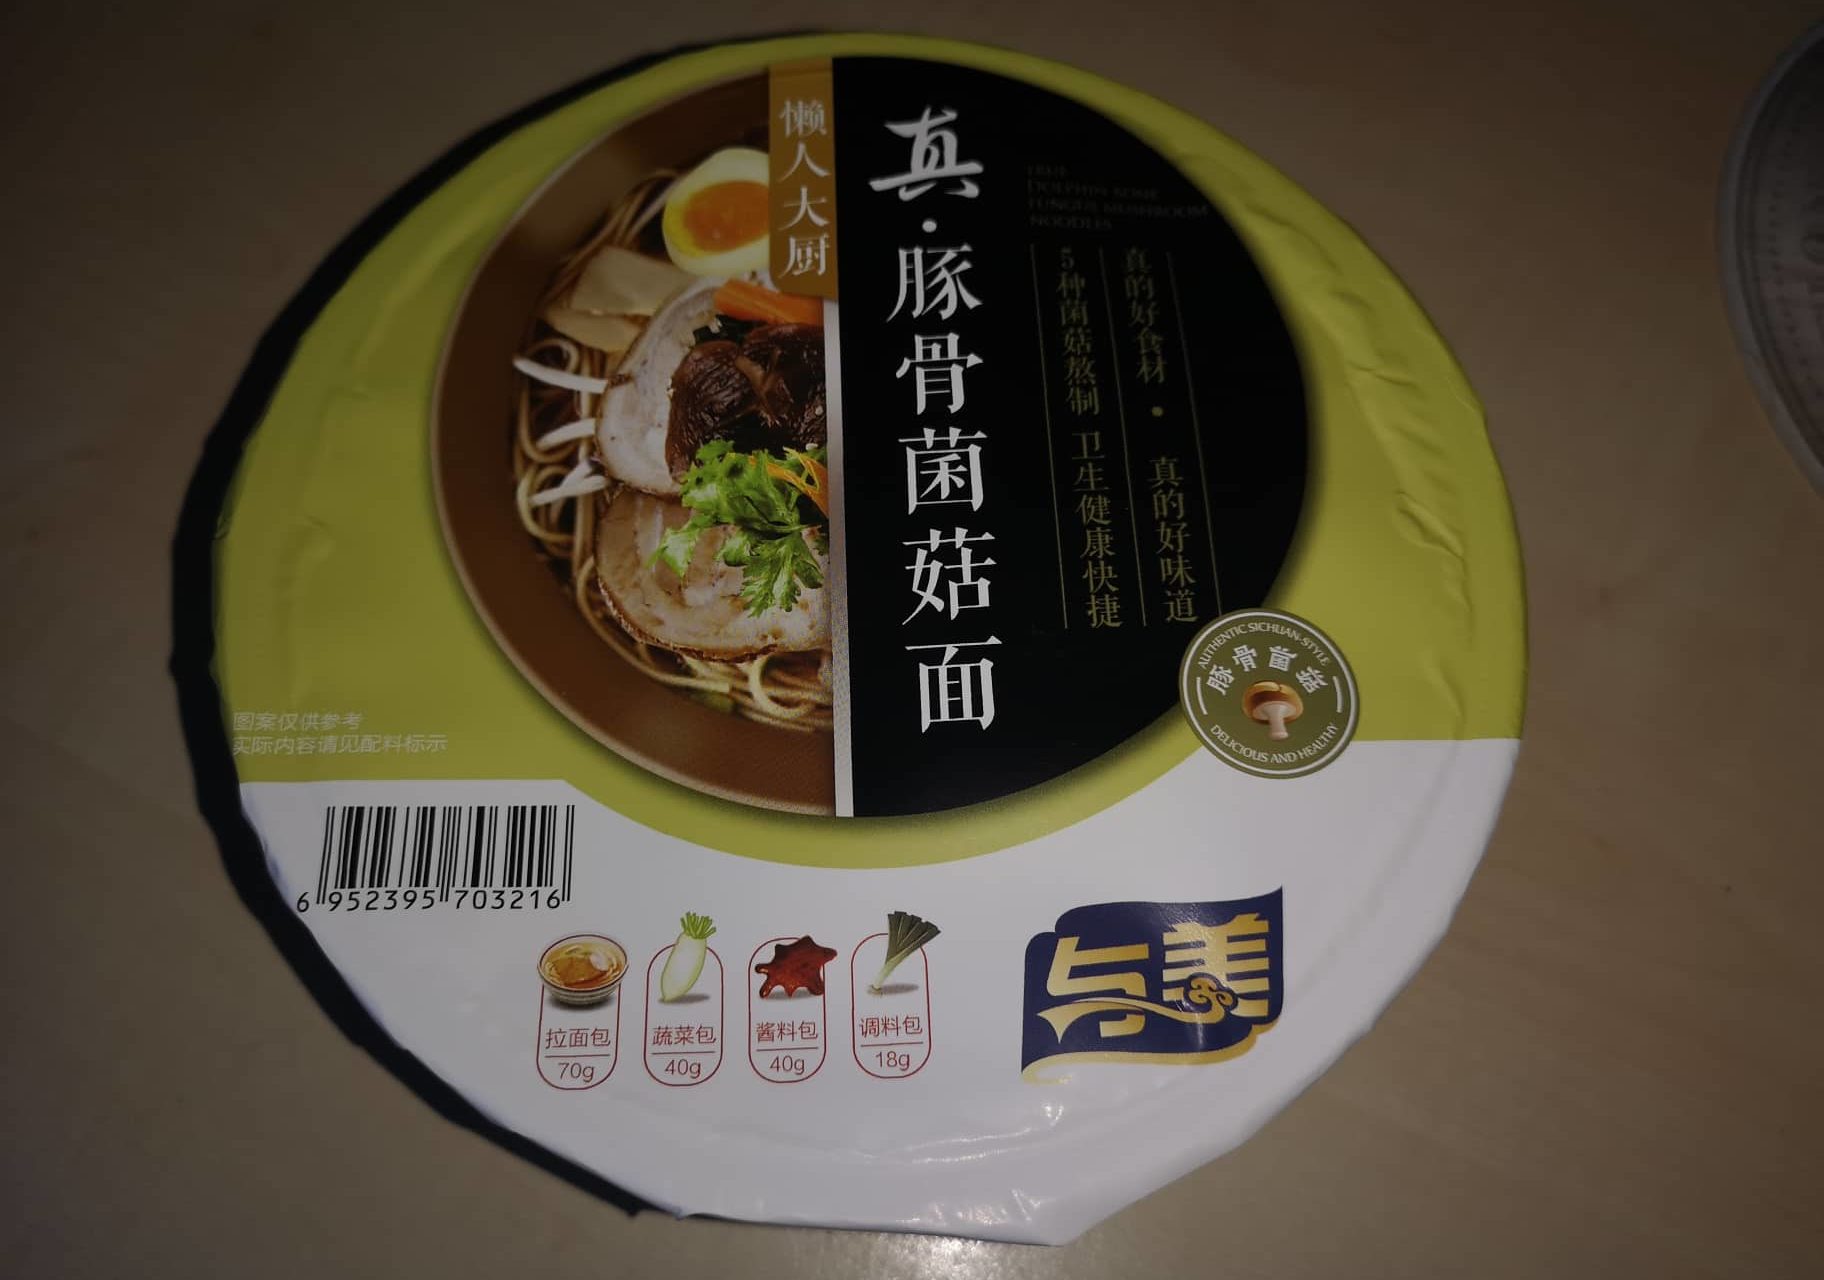 #1641: Yumei „True Dolphin Bone Fungus Mushroom Noodles“ Bowl